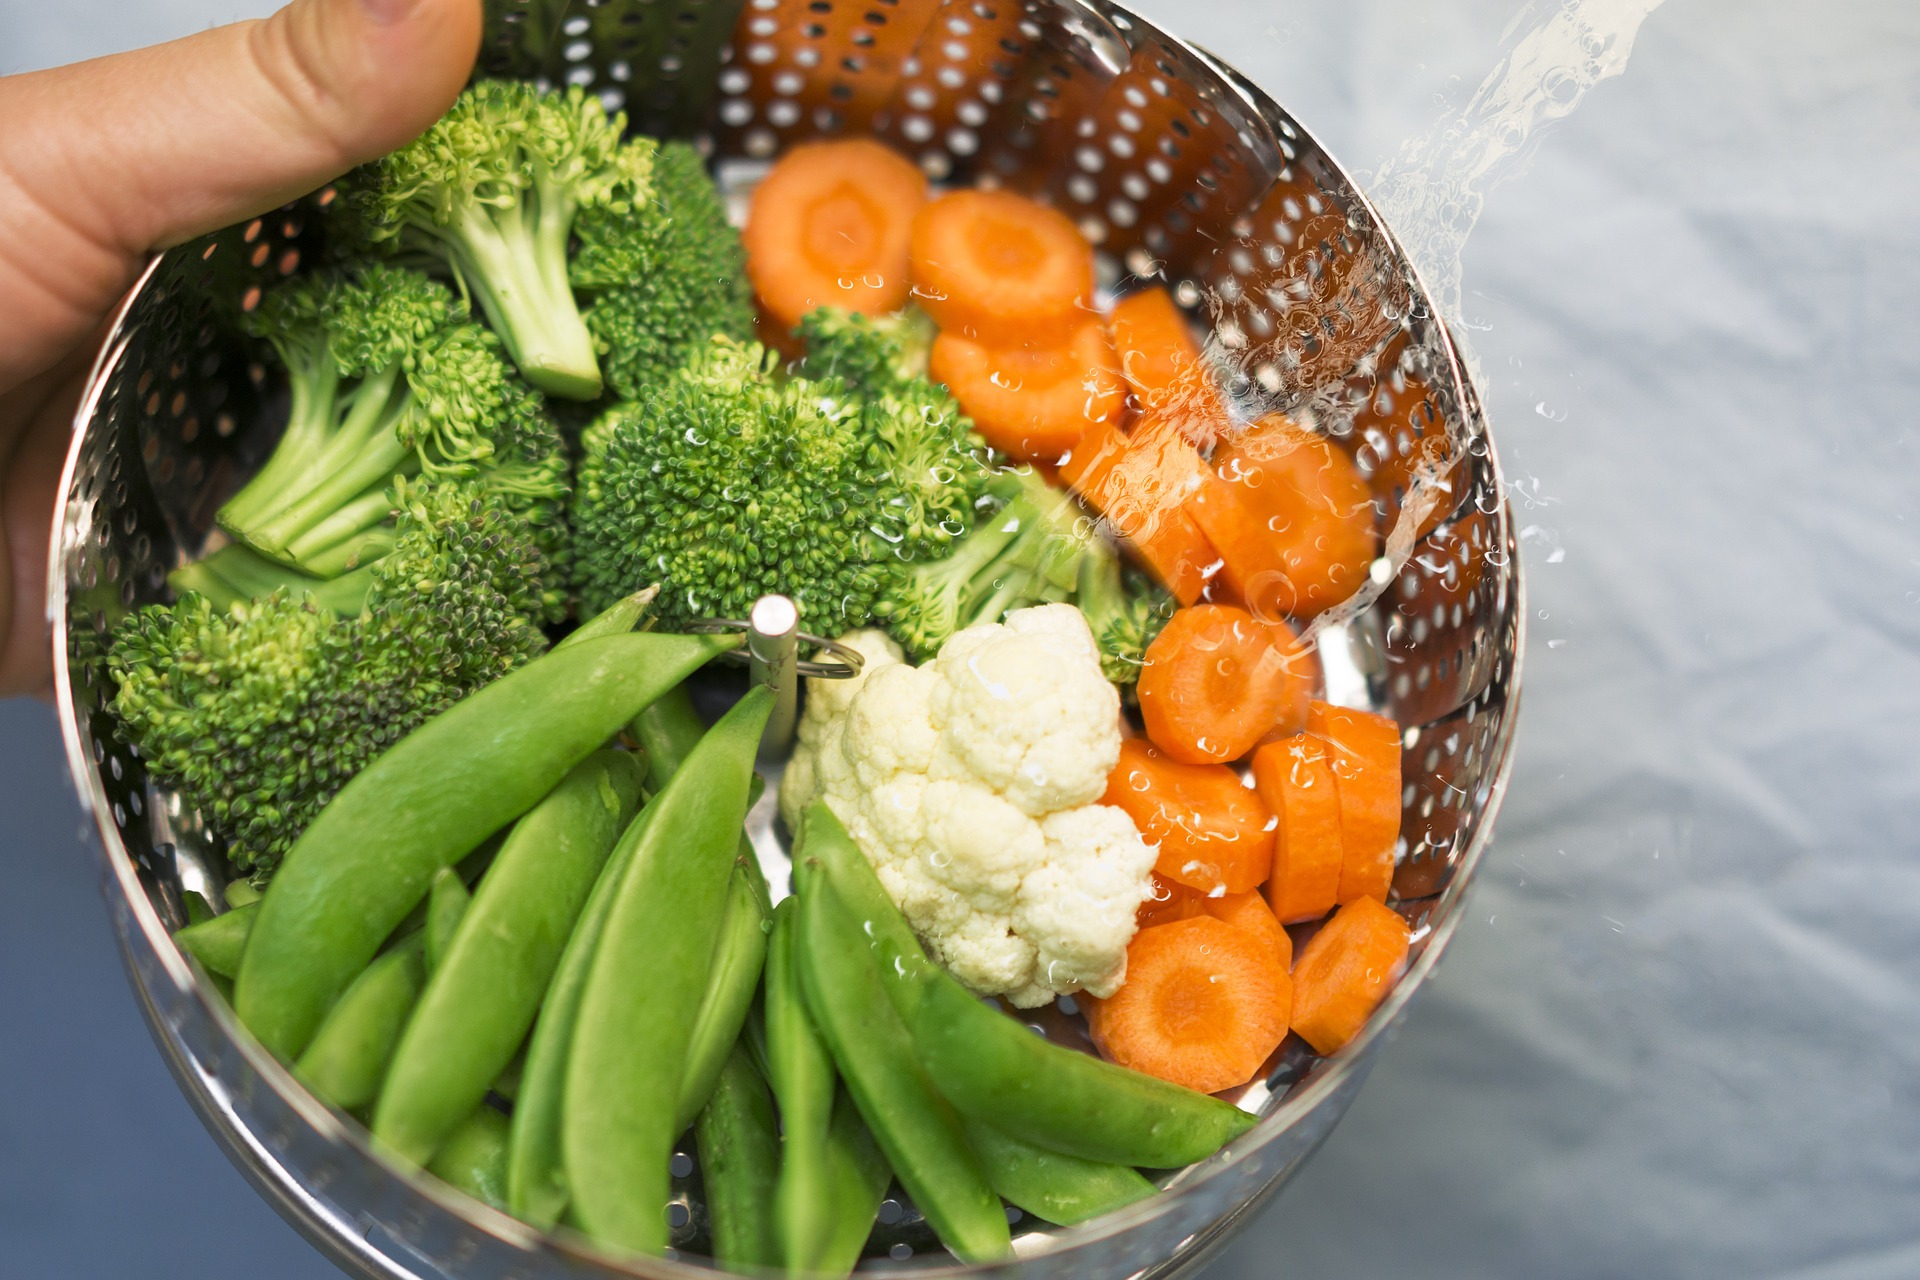 Cum poti gati legume ca broccoli si morcovi la abur, fara sa ai o tigaie speciala